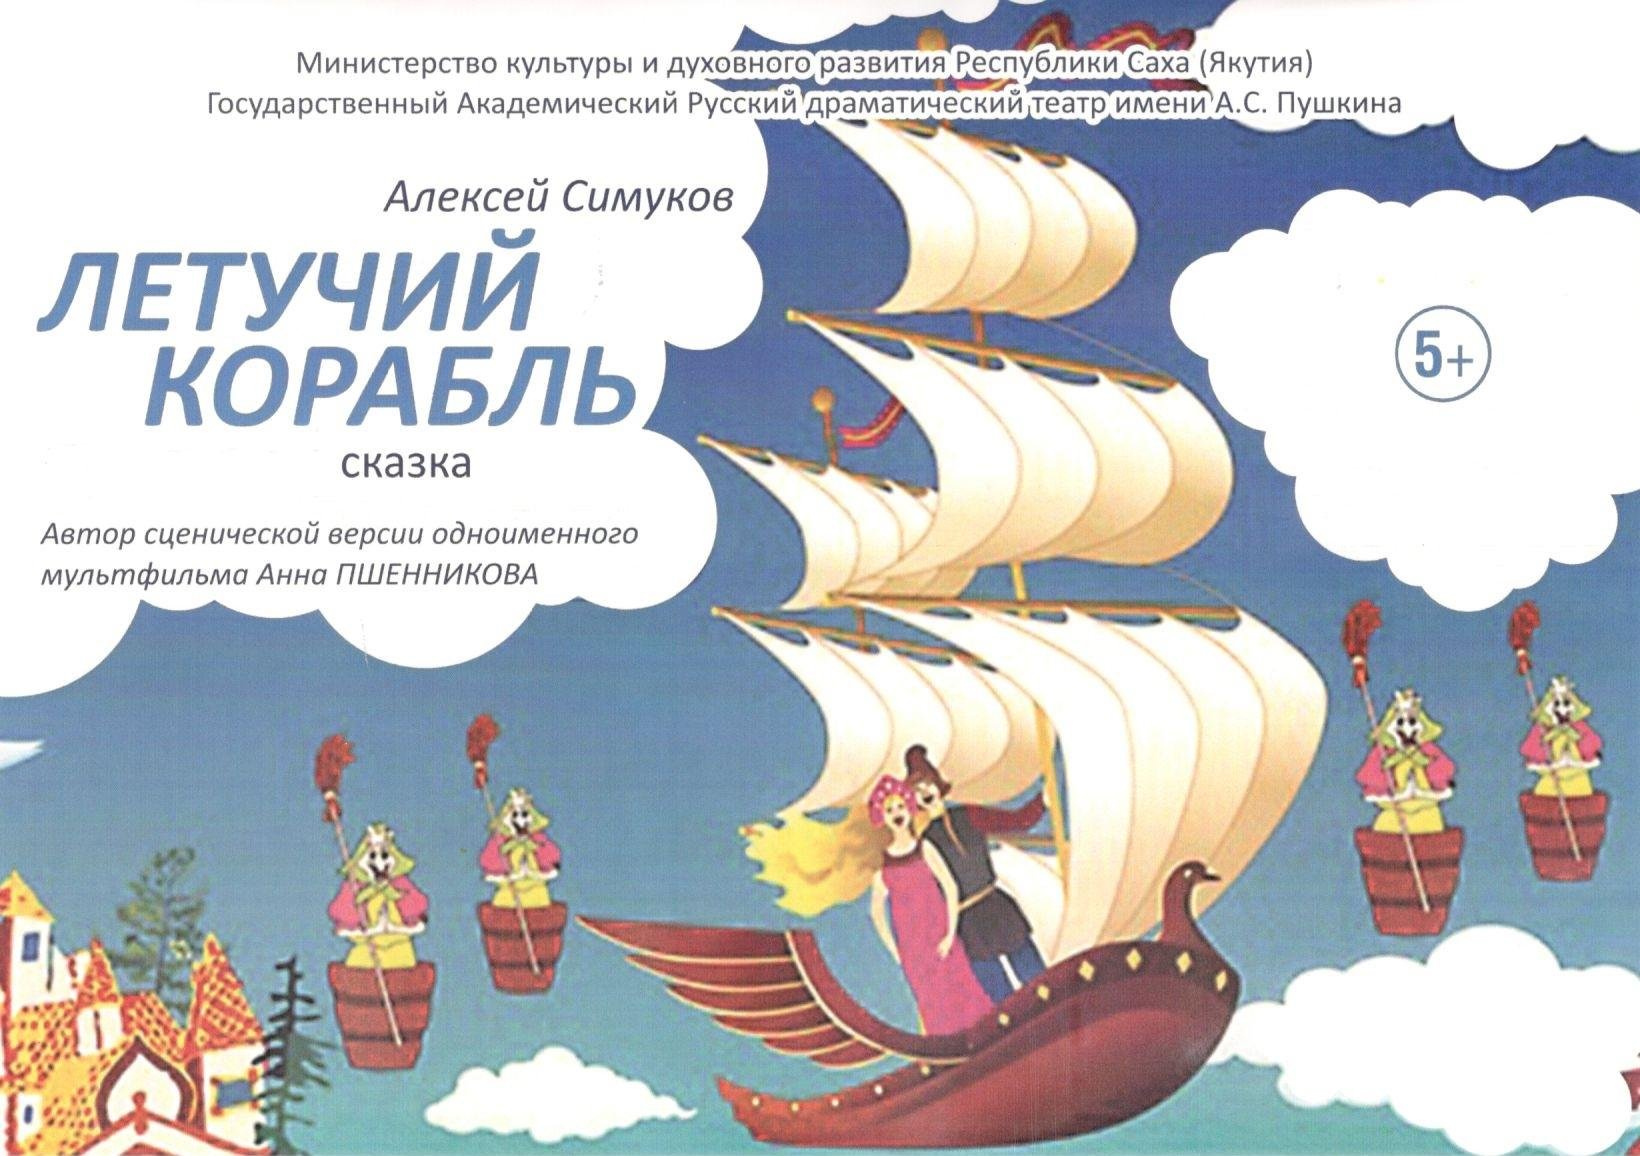 Летучий корабль постер. Иллюстрация к сказке Летучий корабль.